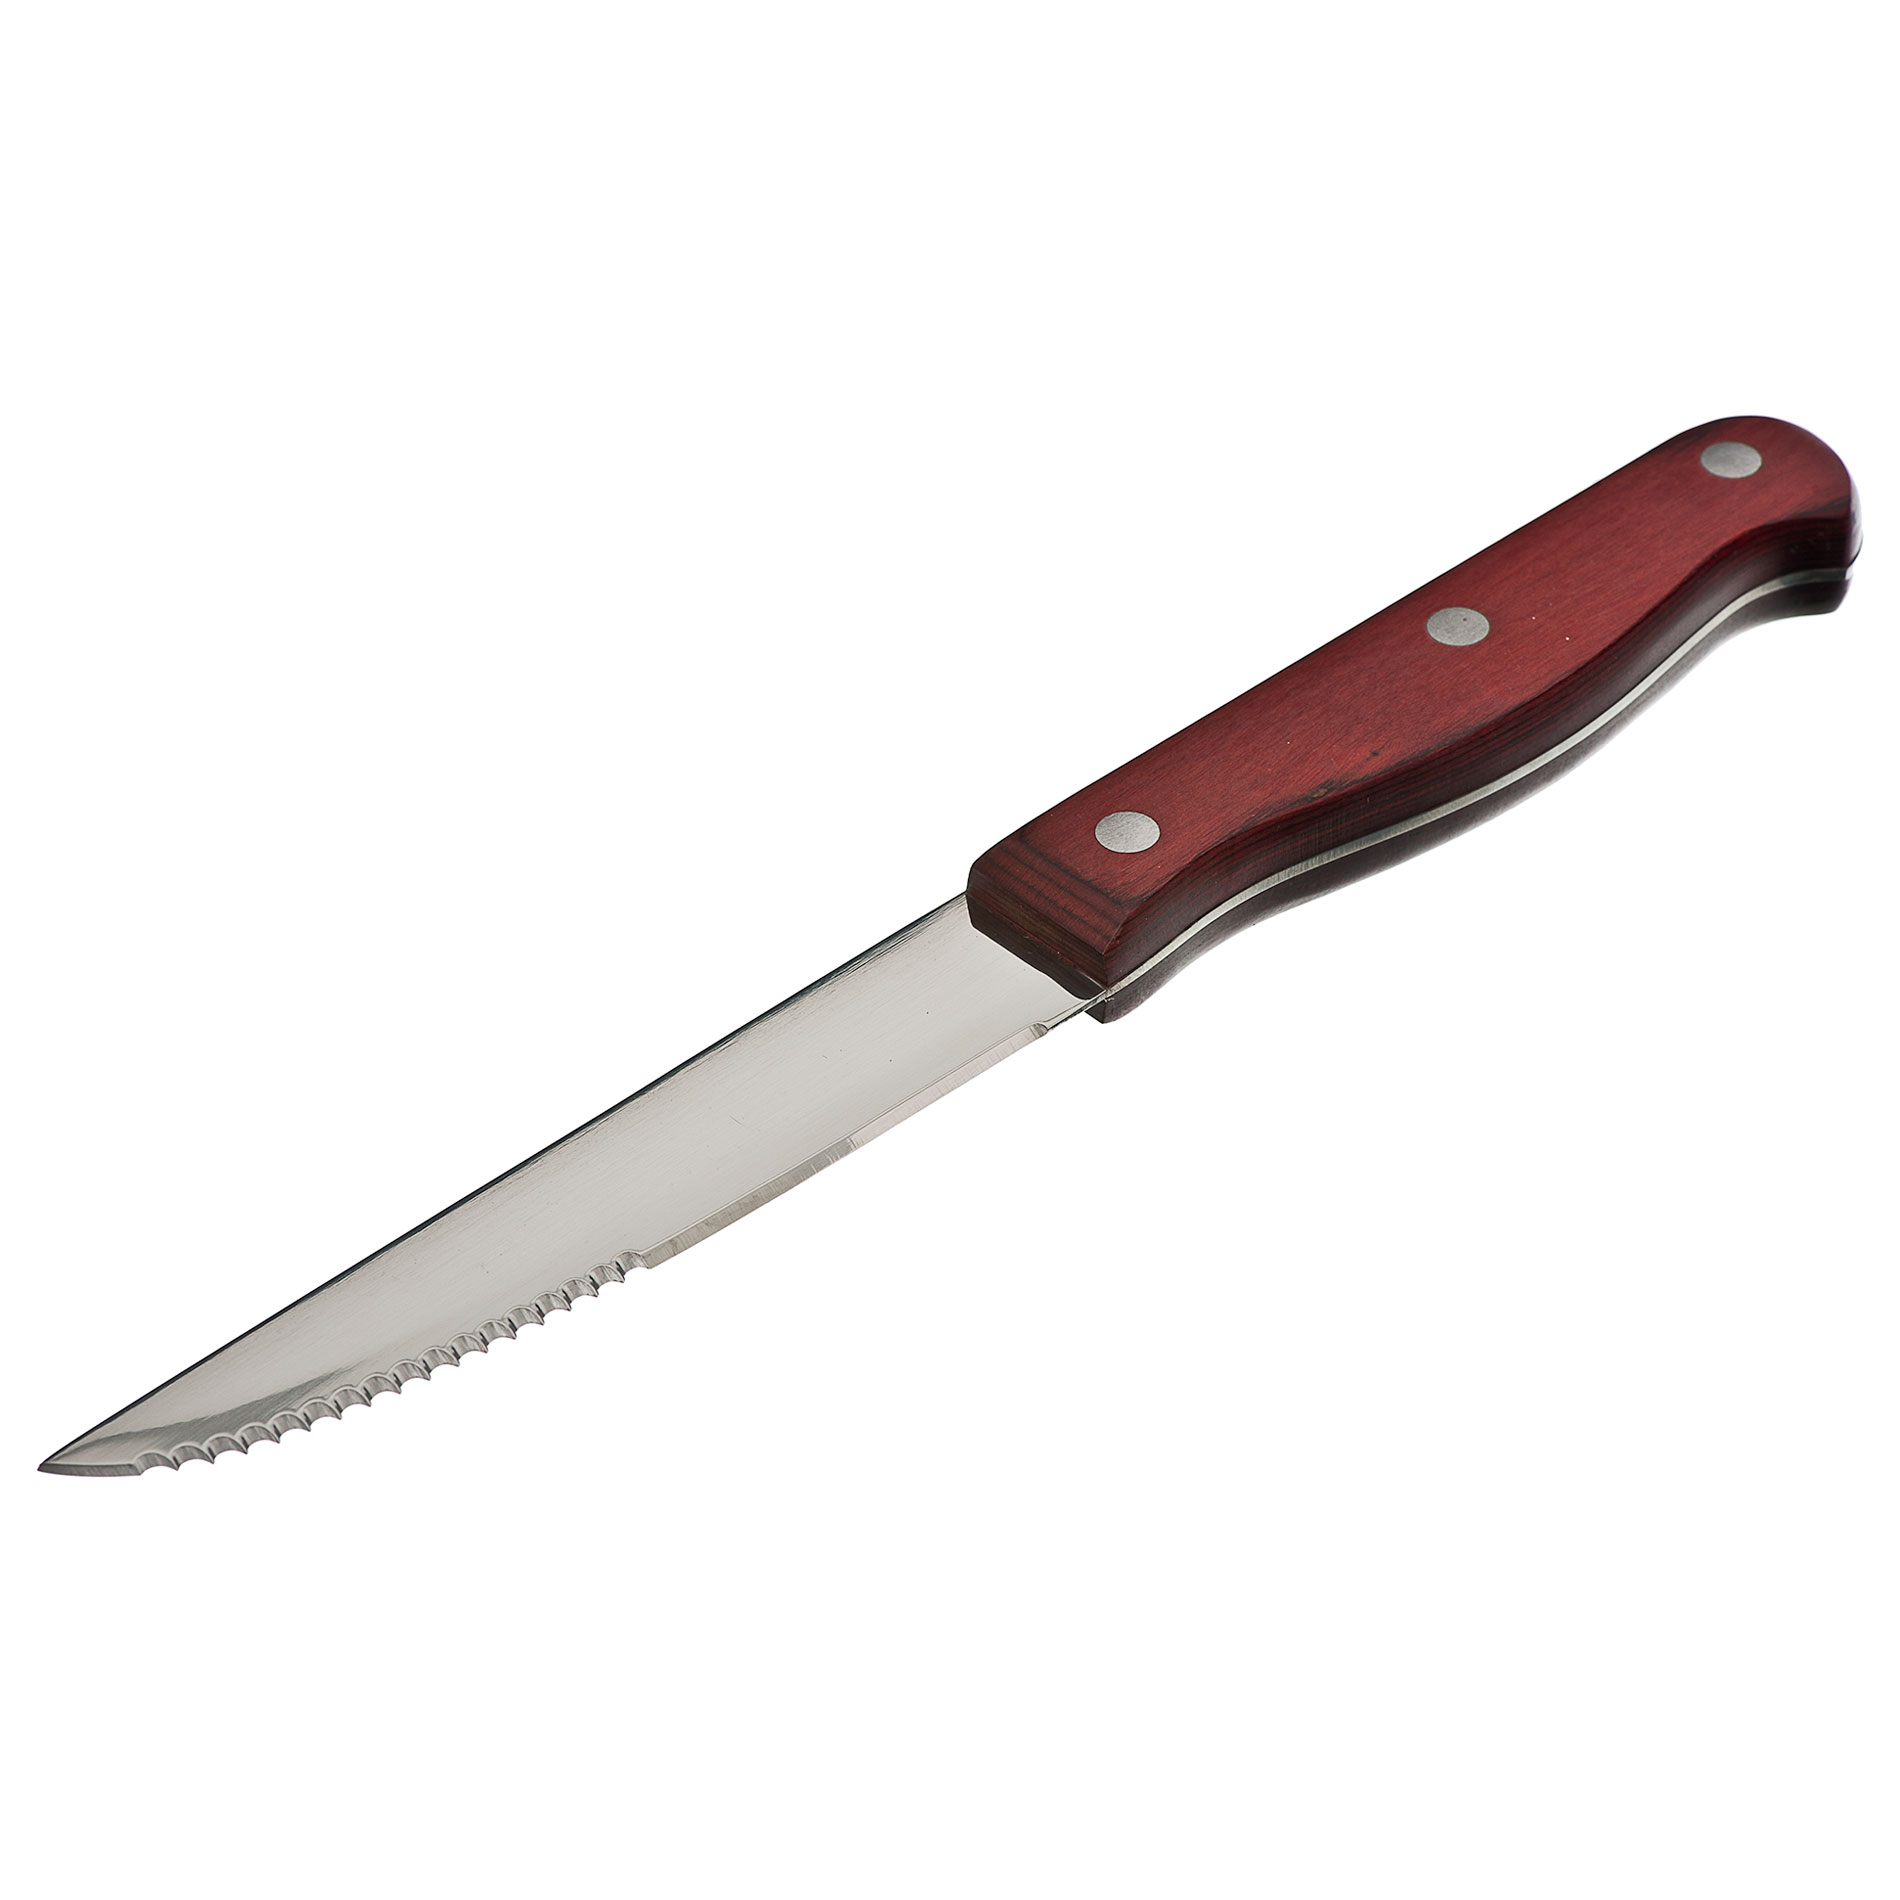 Knife clipart steak knife #2 - Knife Clipart